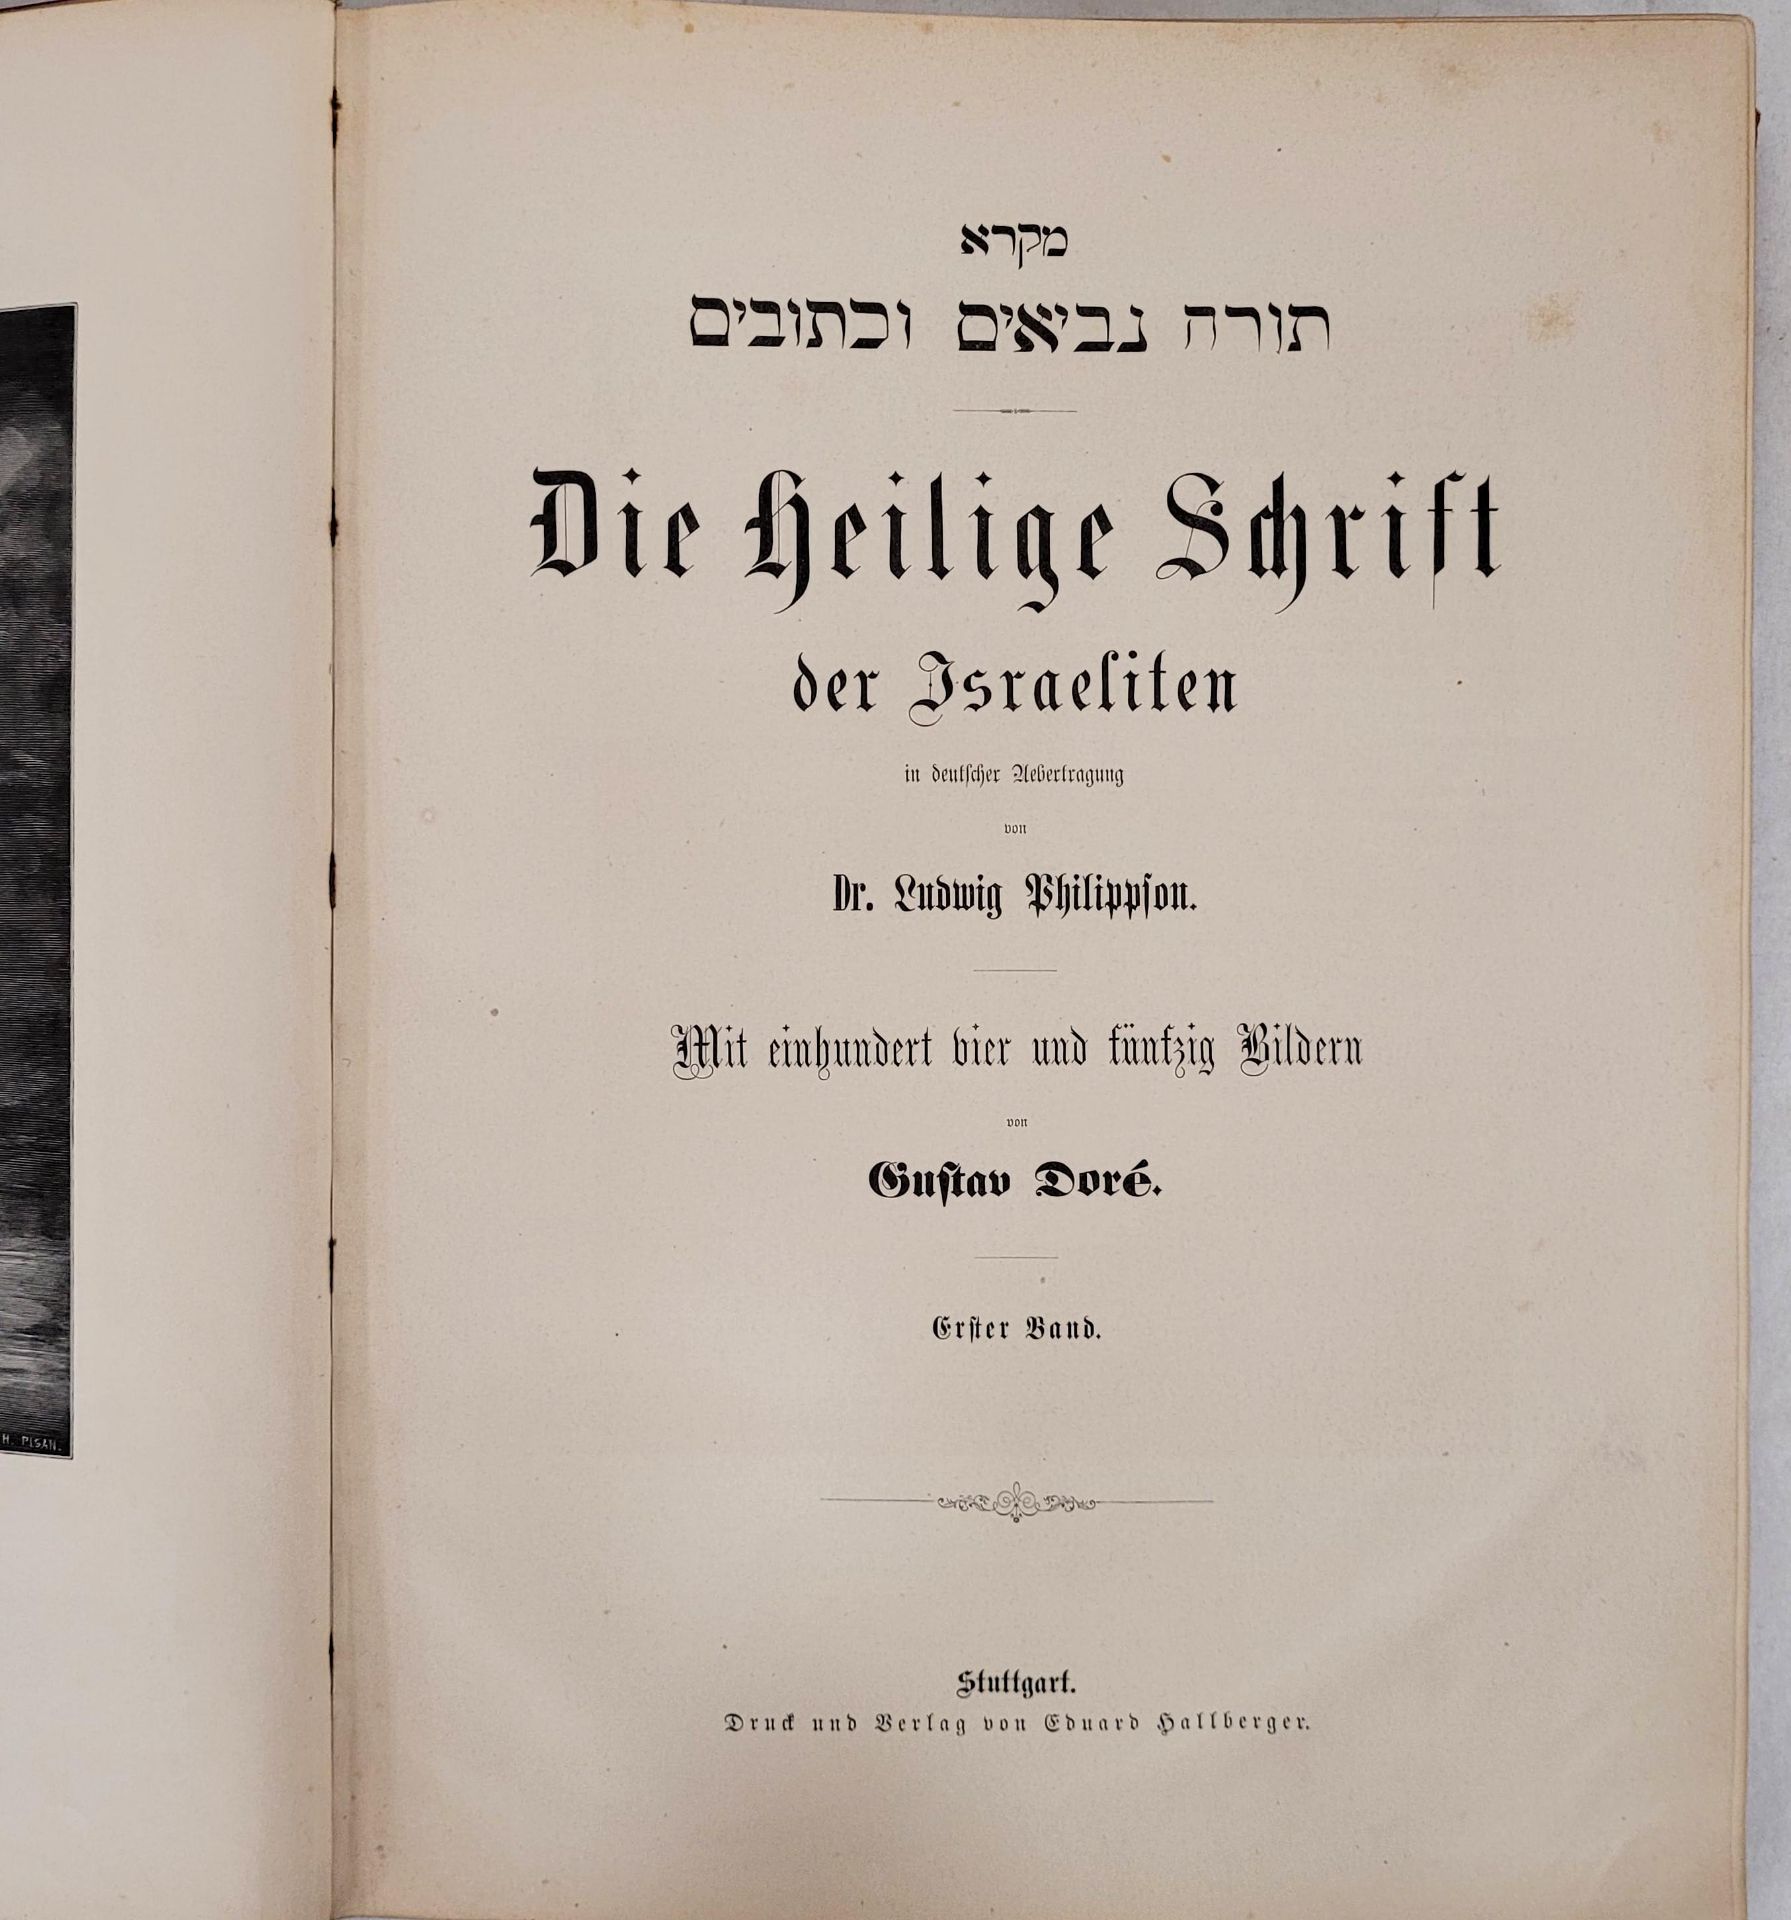 PHILIPPSON, Ludwig: Miqra Tora, neviim u-ketuvim - Die Heilige Schrift der Israeliten.. - Image 2 of 5